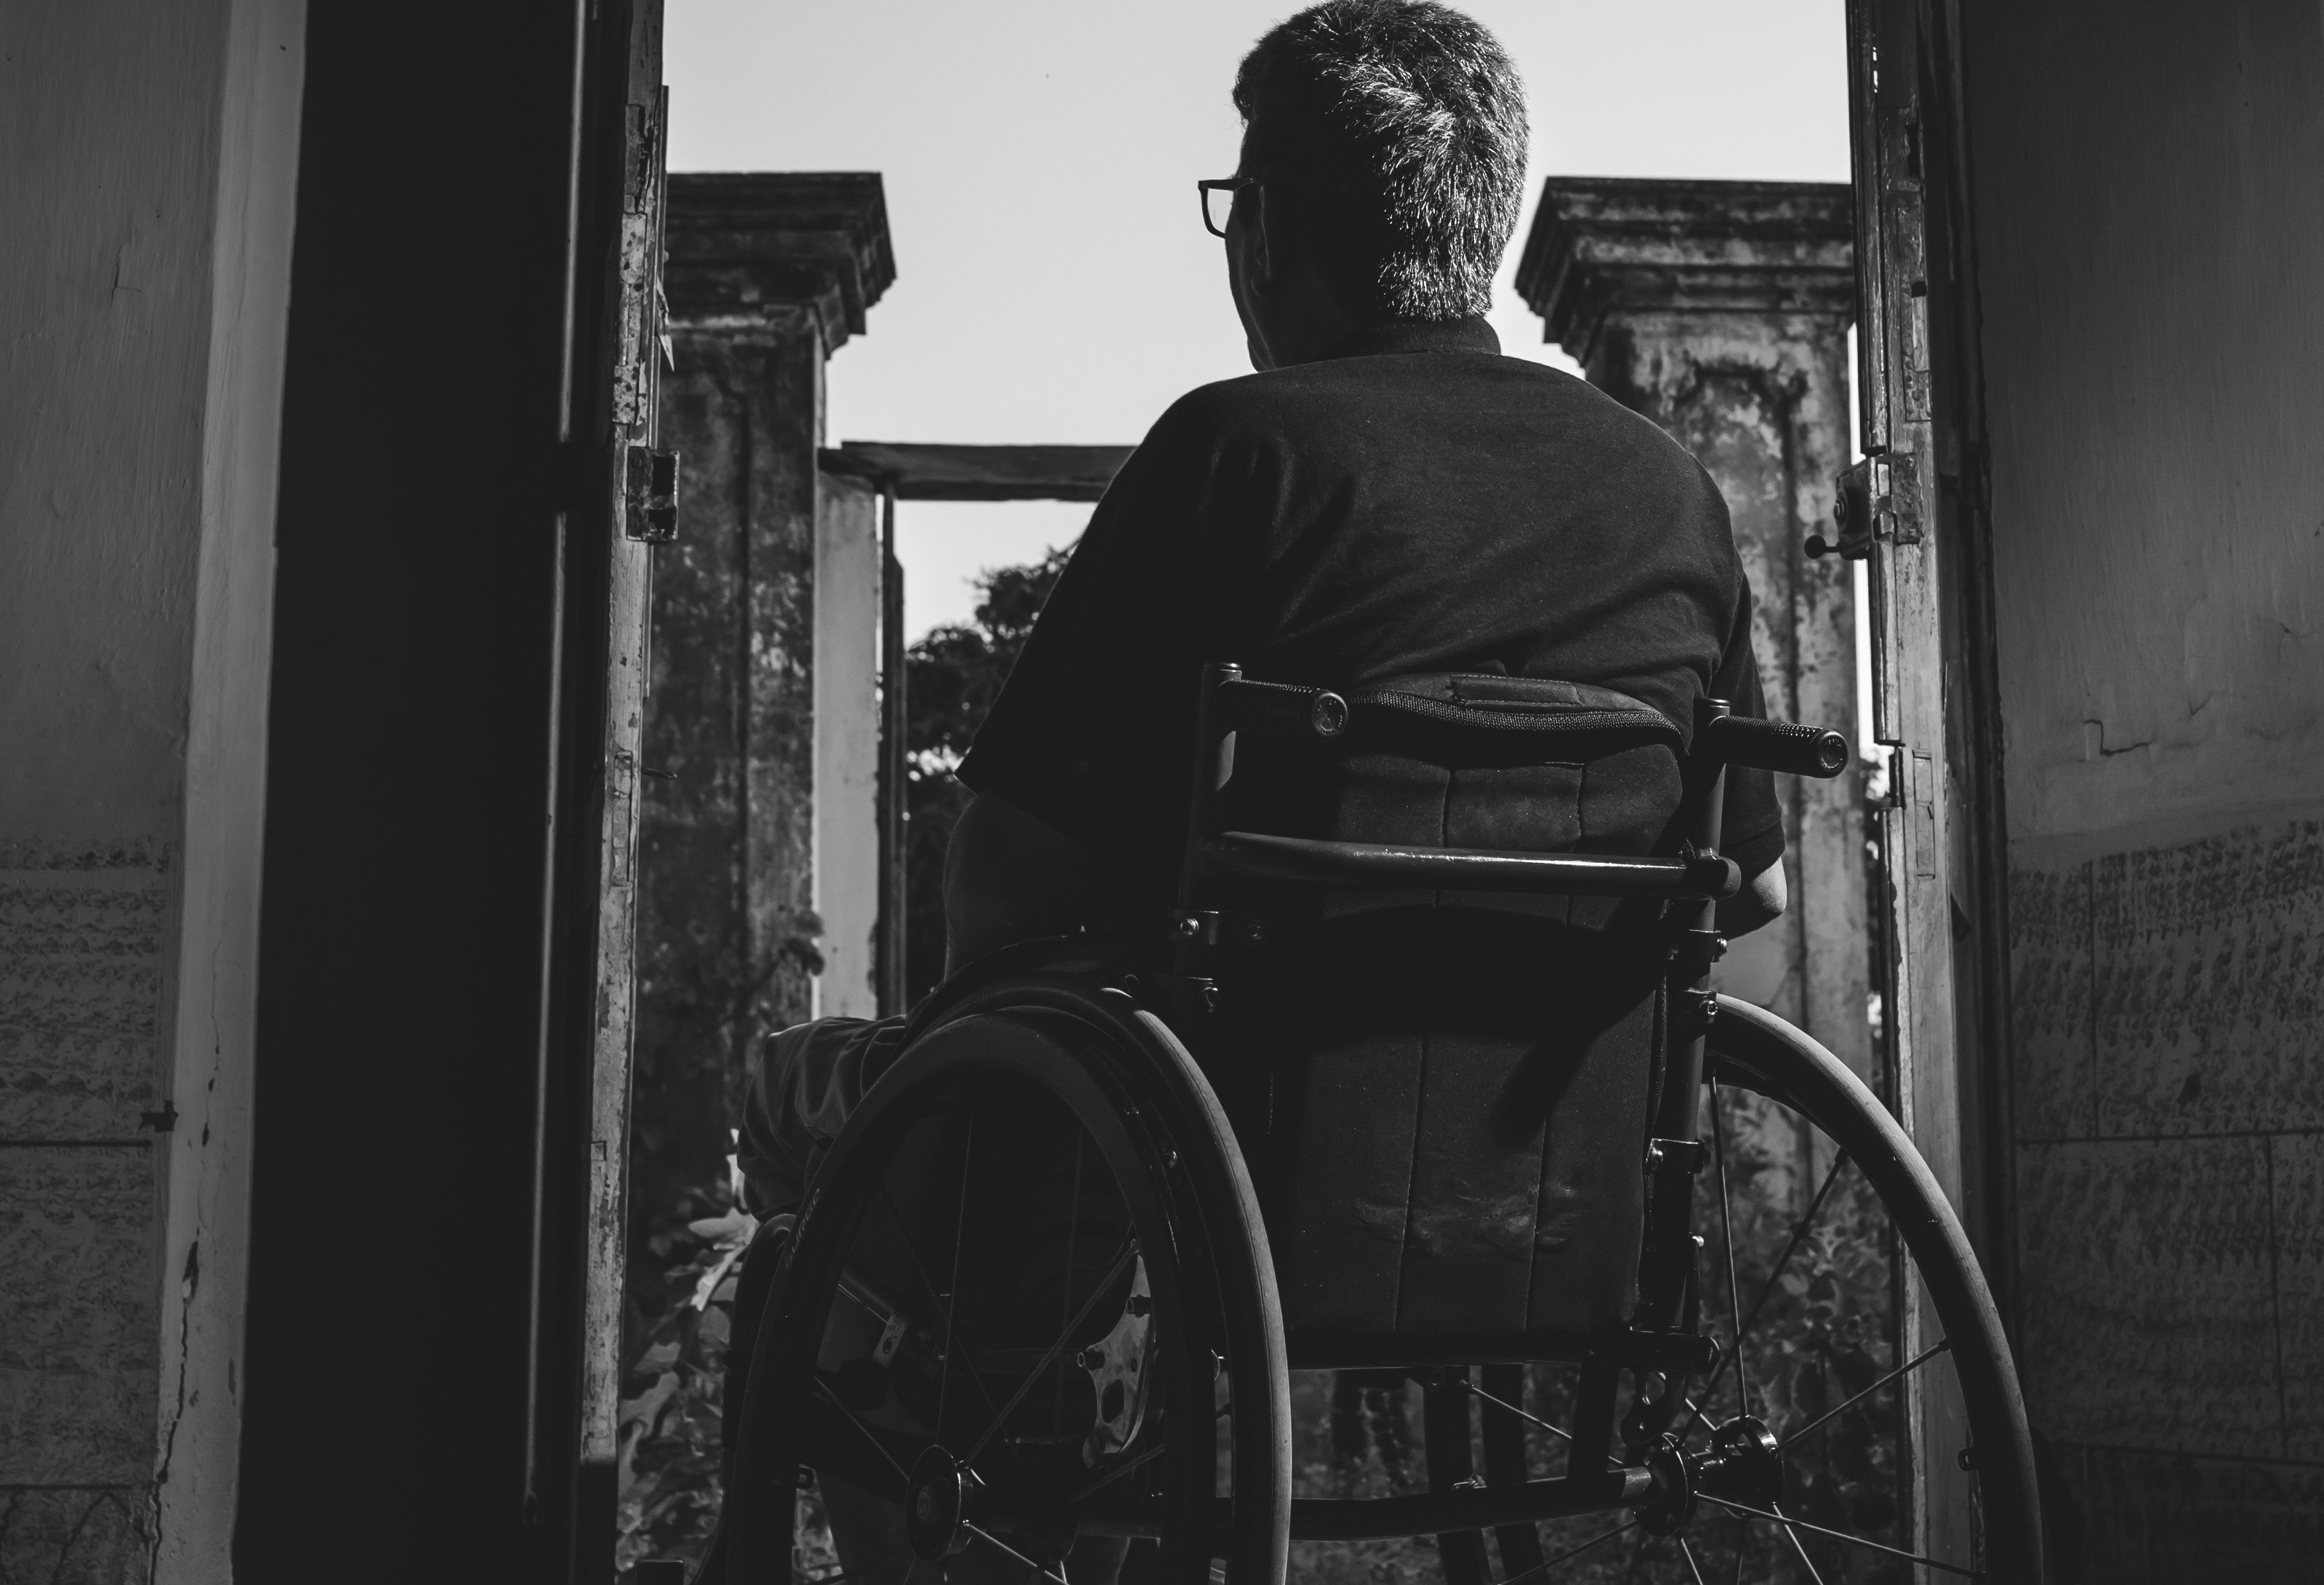 Andrew met Robert, his neighbor who was in a wheelchair. | Source: Pexels